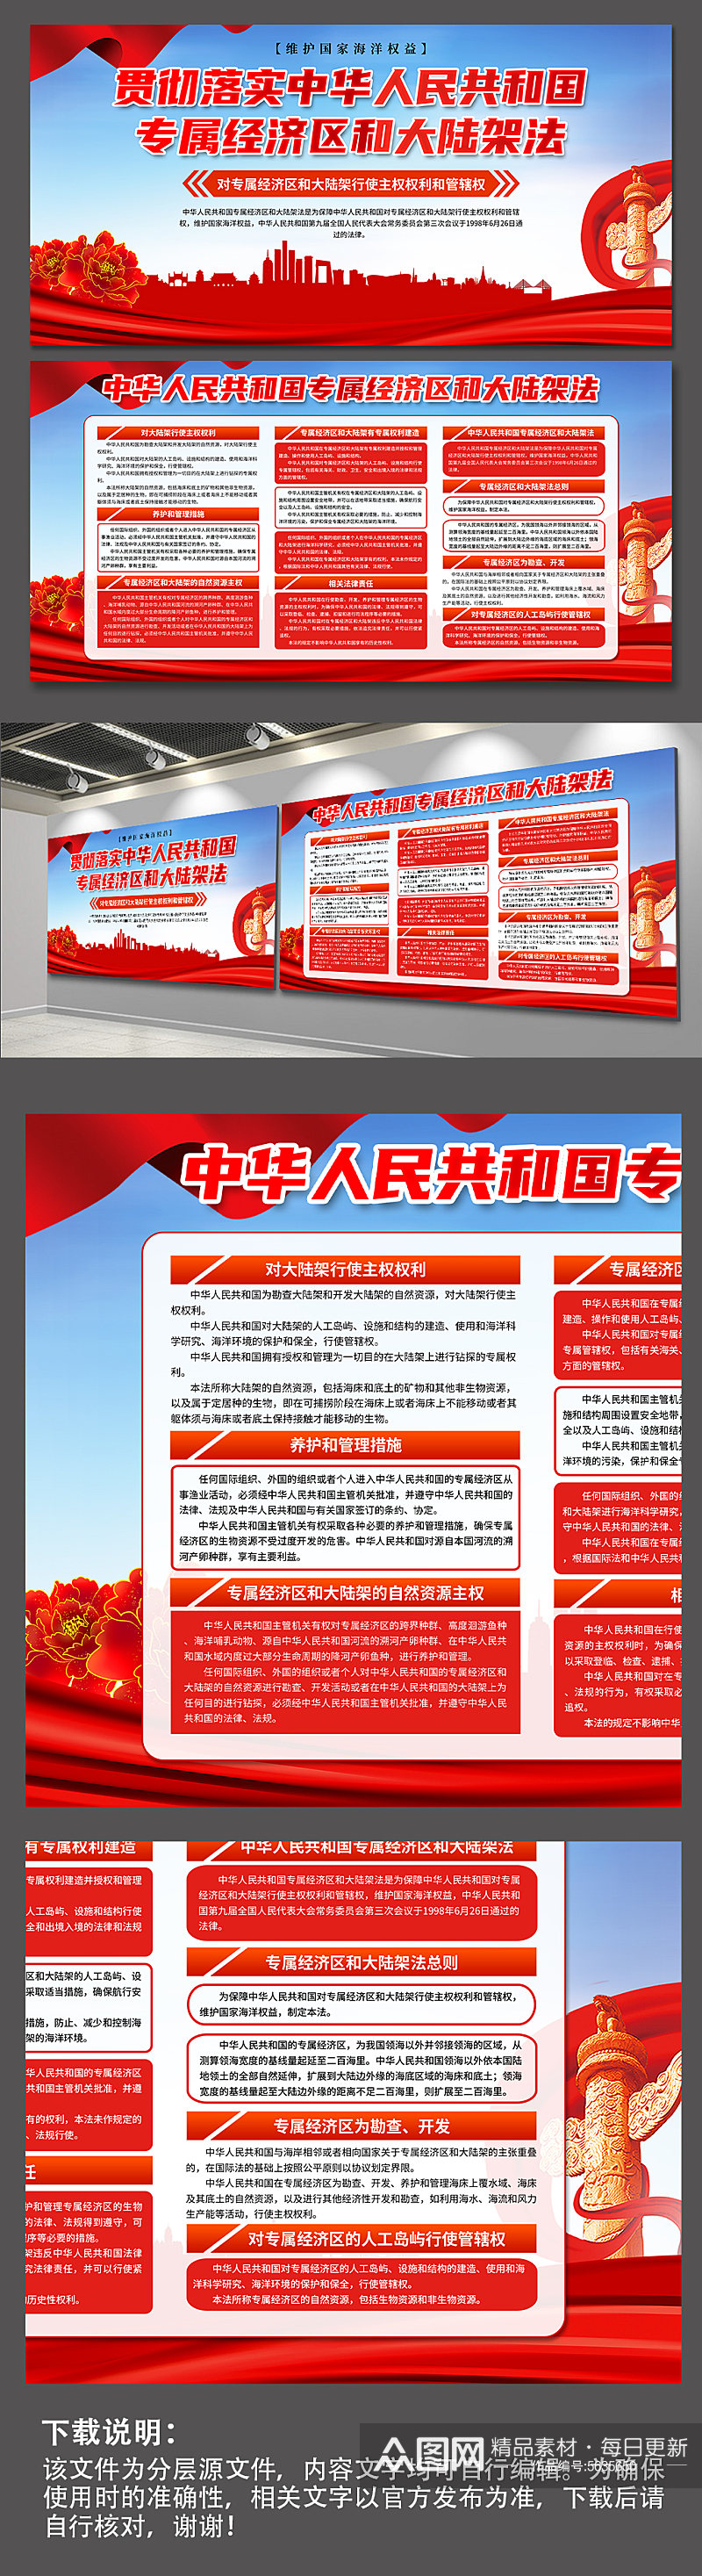 中华人民共和国专属经济区和大陆架法展板素材